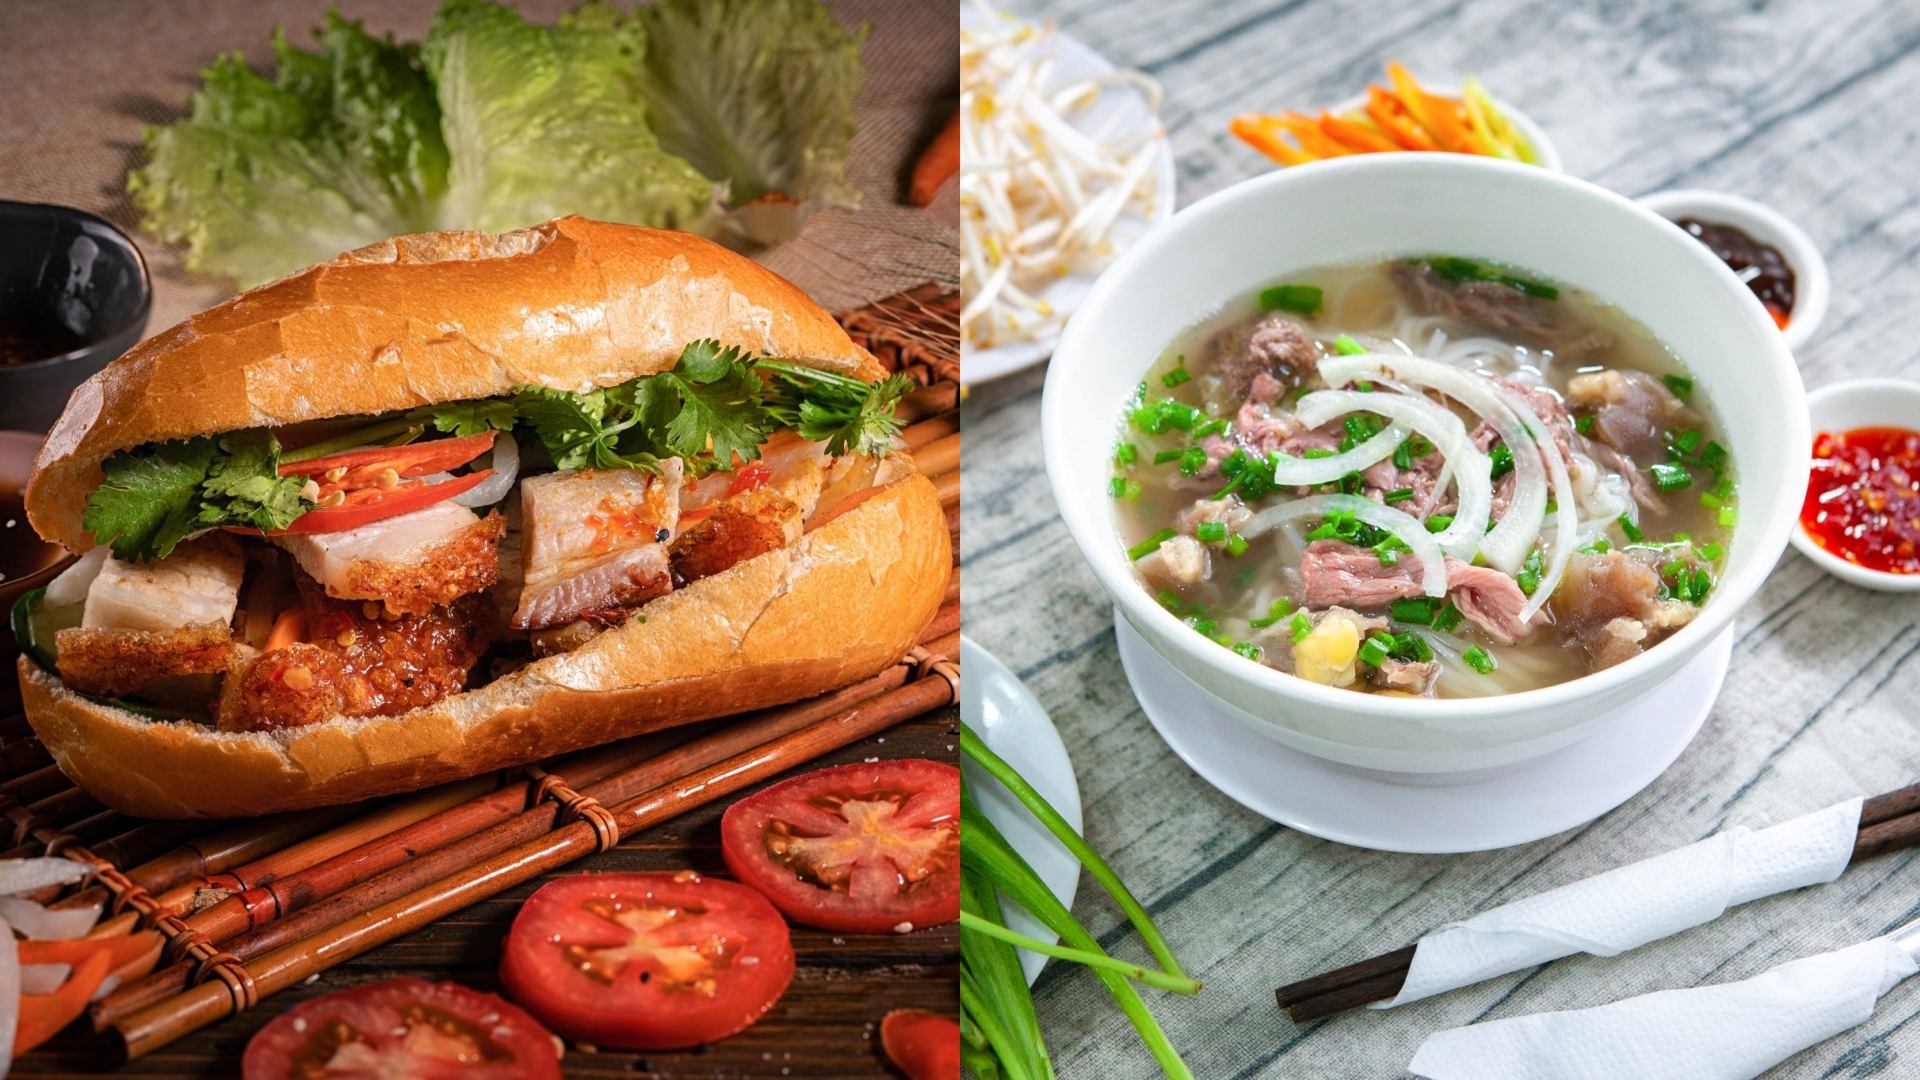 Bánh mì heo quay, thanh long Phan Thiết, nước mắm Phú Quốc... đưa Việt Nam vào top 20 nền ẩm thực hấp dẫn nhất thế giới - 1